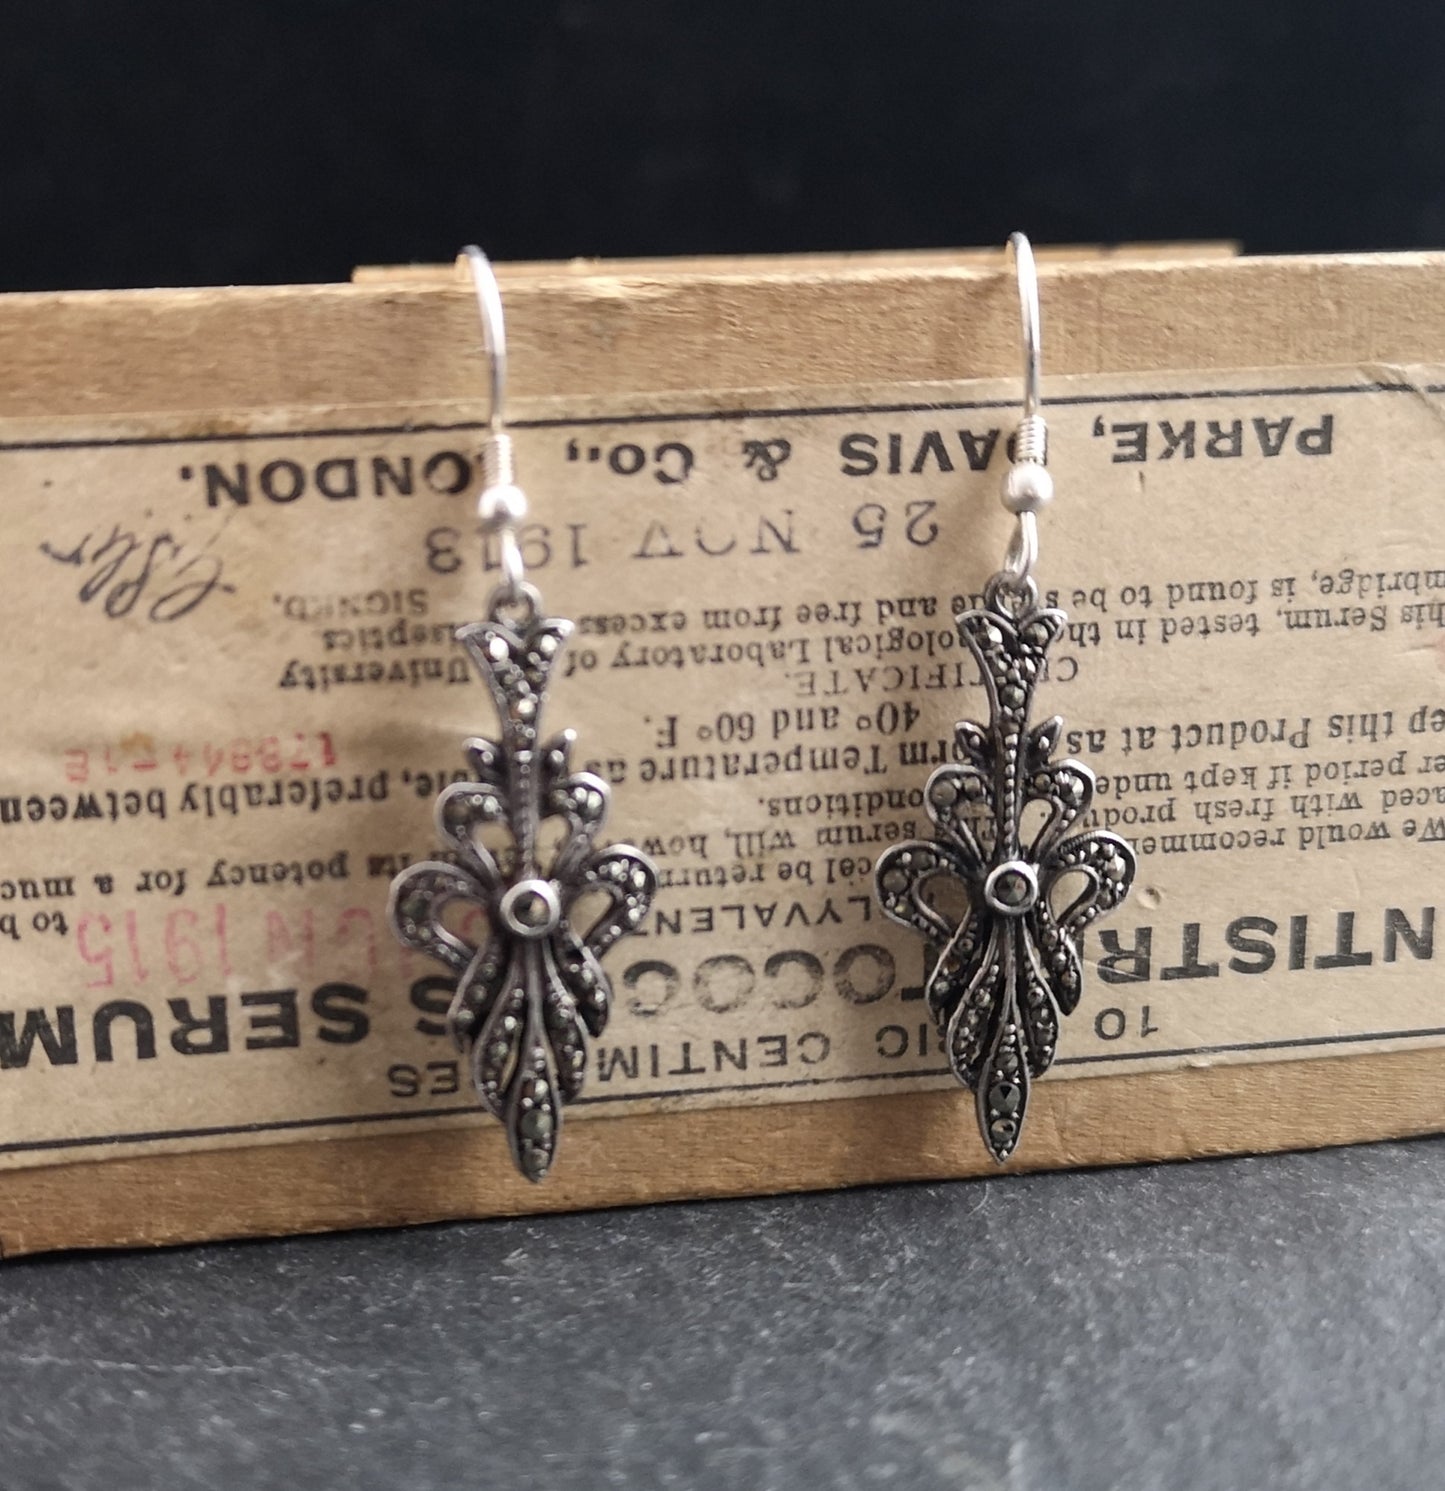 Vintage silver drop earrings, Art Deco